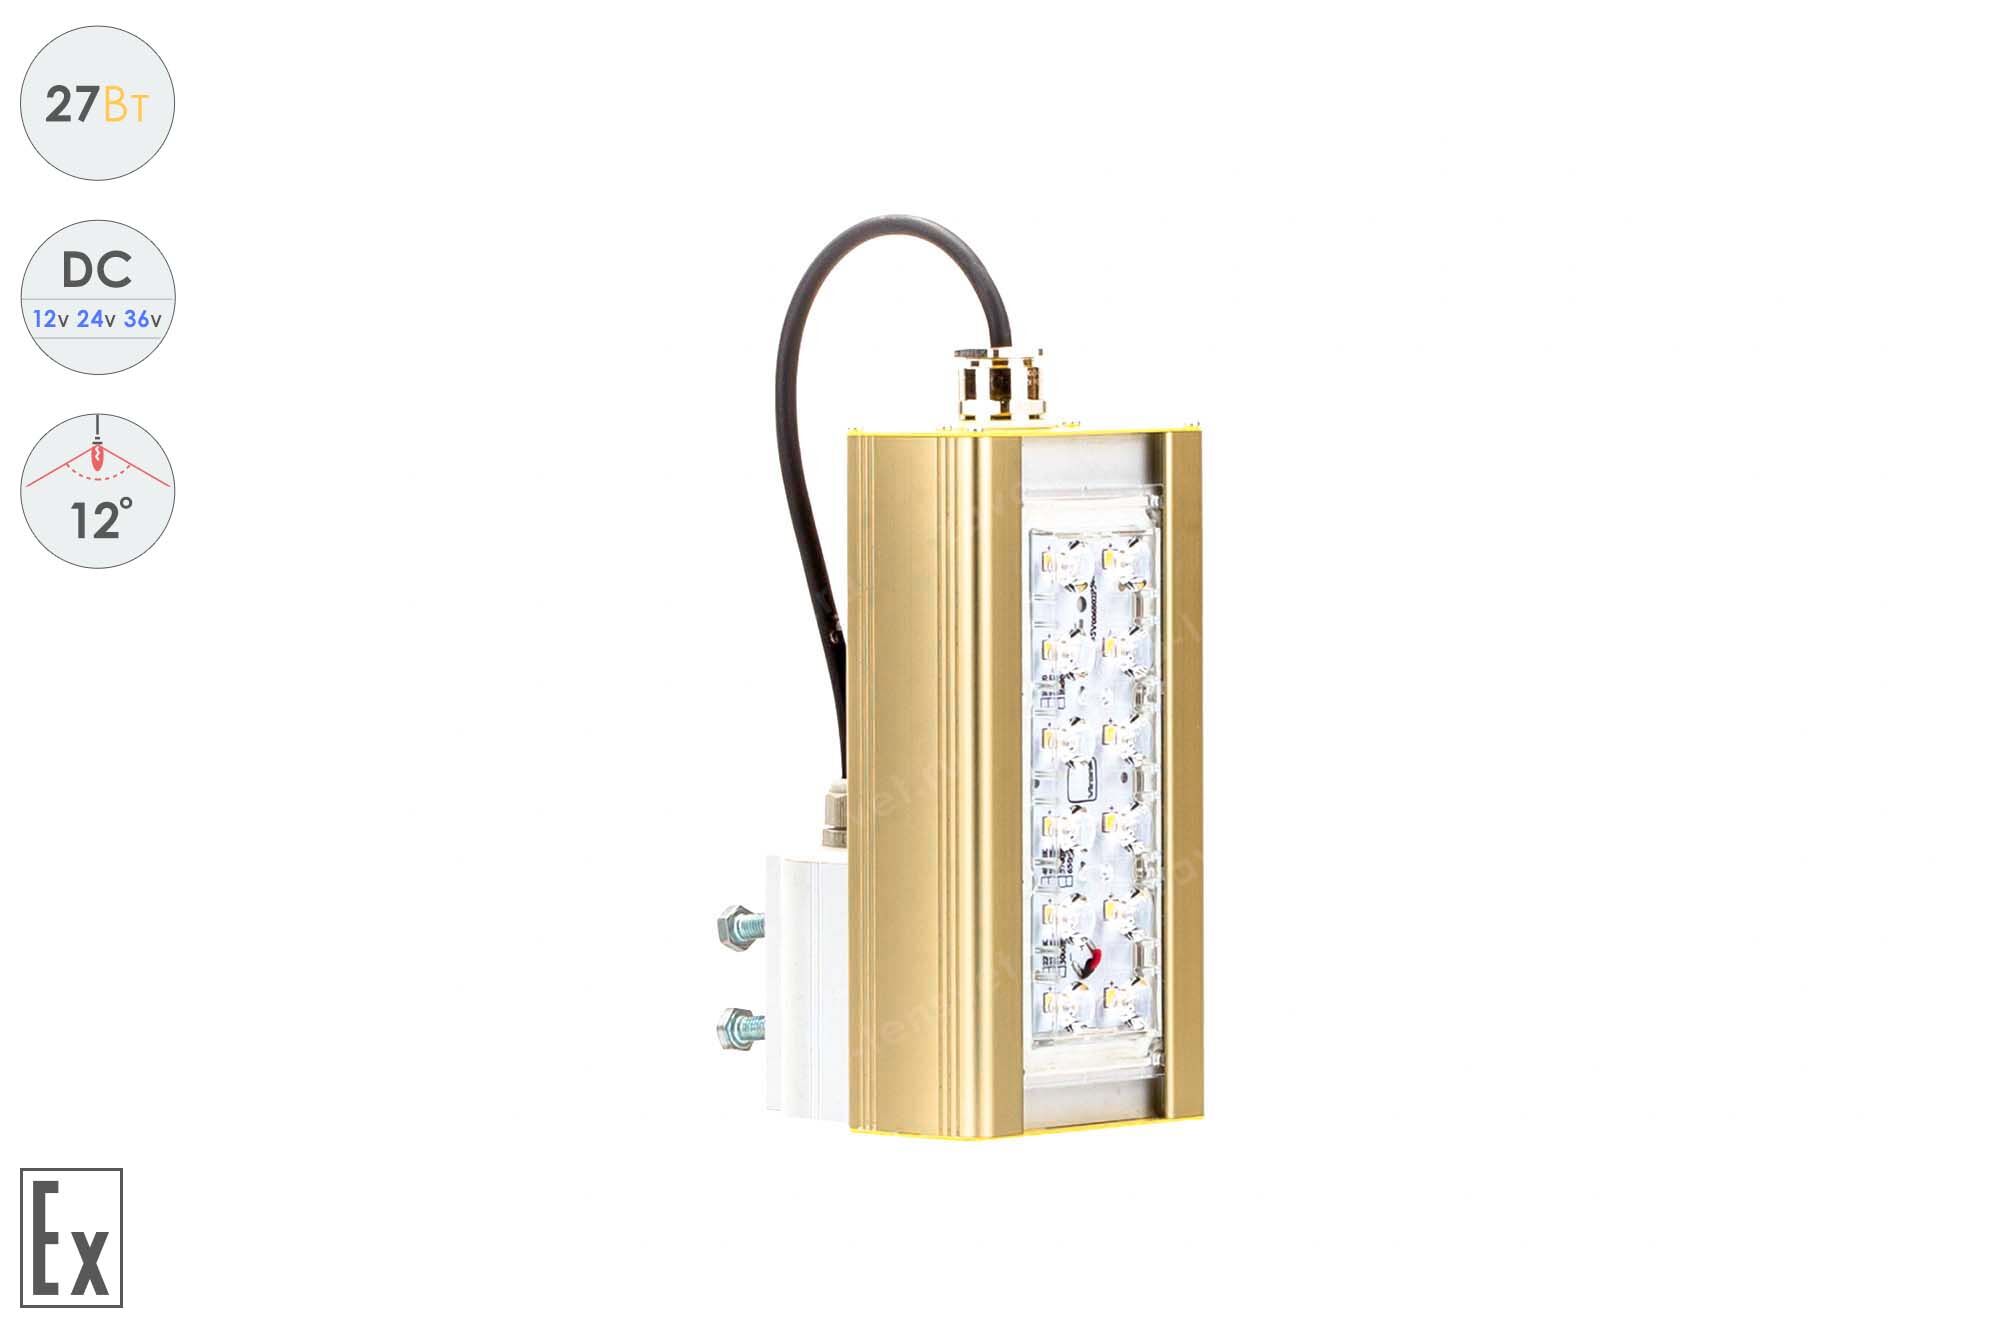 Низковольтный светодиодный светильник Прожектор Взрывозащищенный GOLD, консоль K-1 , 27 Вт, 12° 1